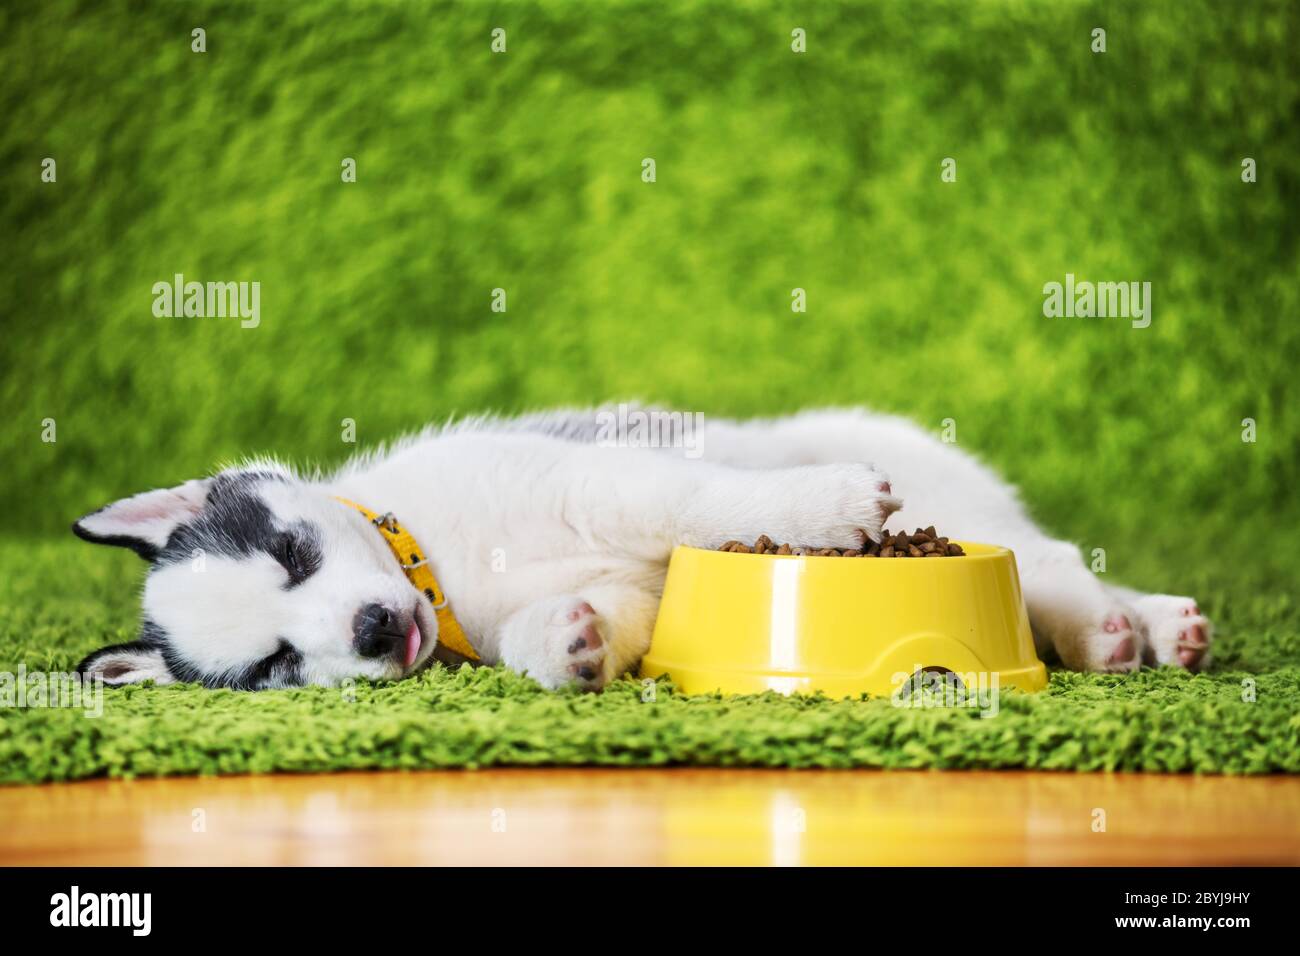 Un petit chien blanc chiot race husky sibérien avec un mangeoire jaune avec des aliments secs pour chiens repose sur un tapis vert. Photographie de chiens et d'animaux de compagnie Banque D'Images